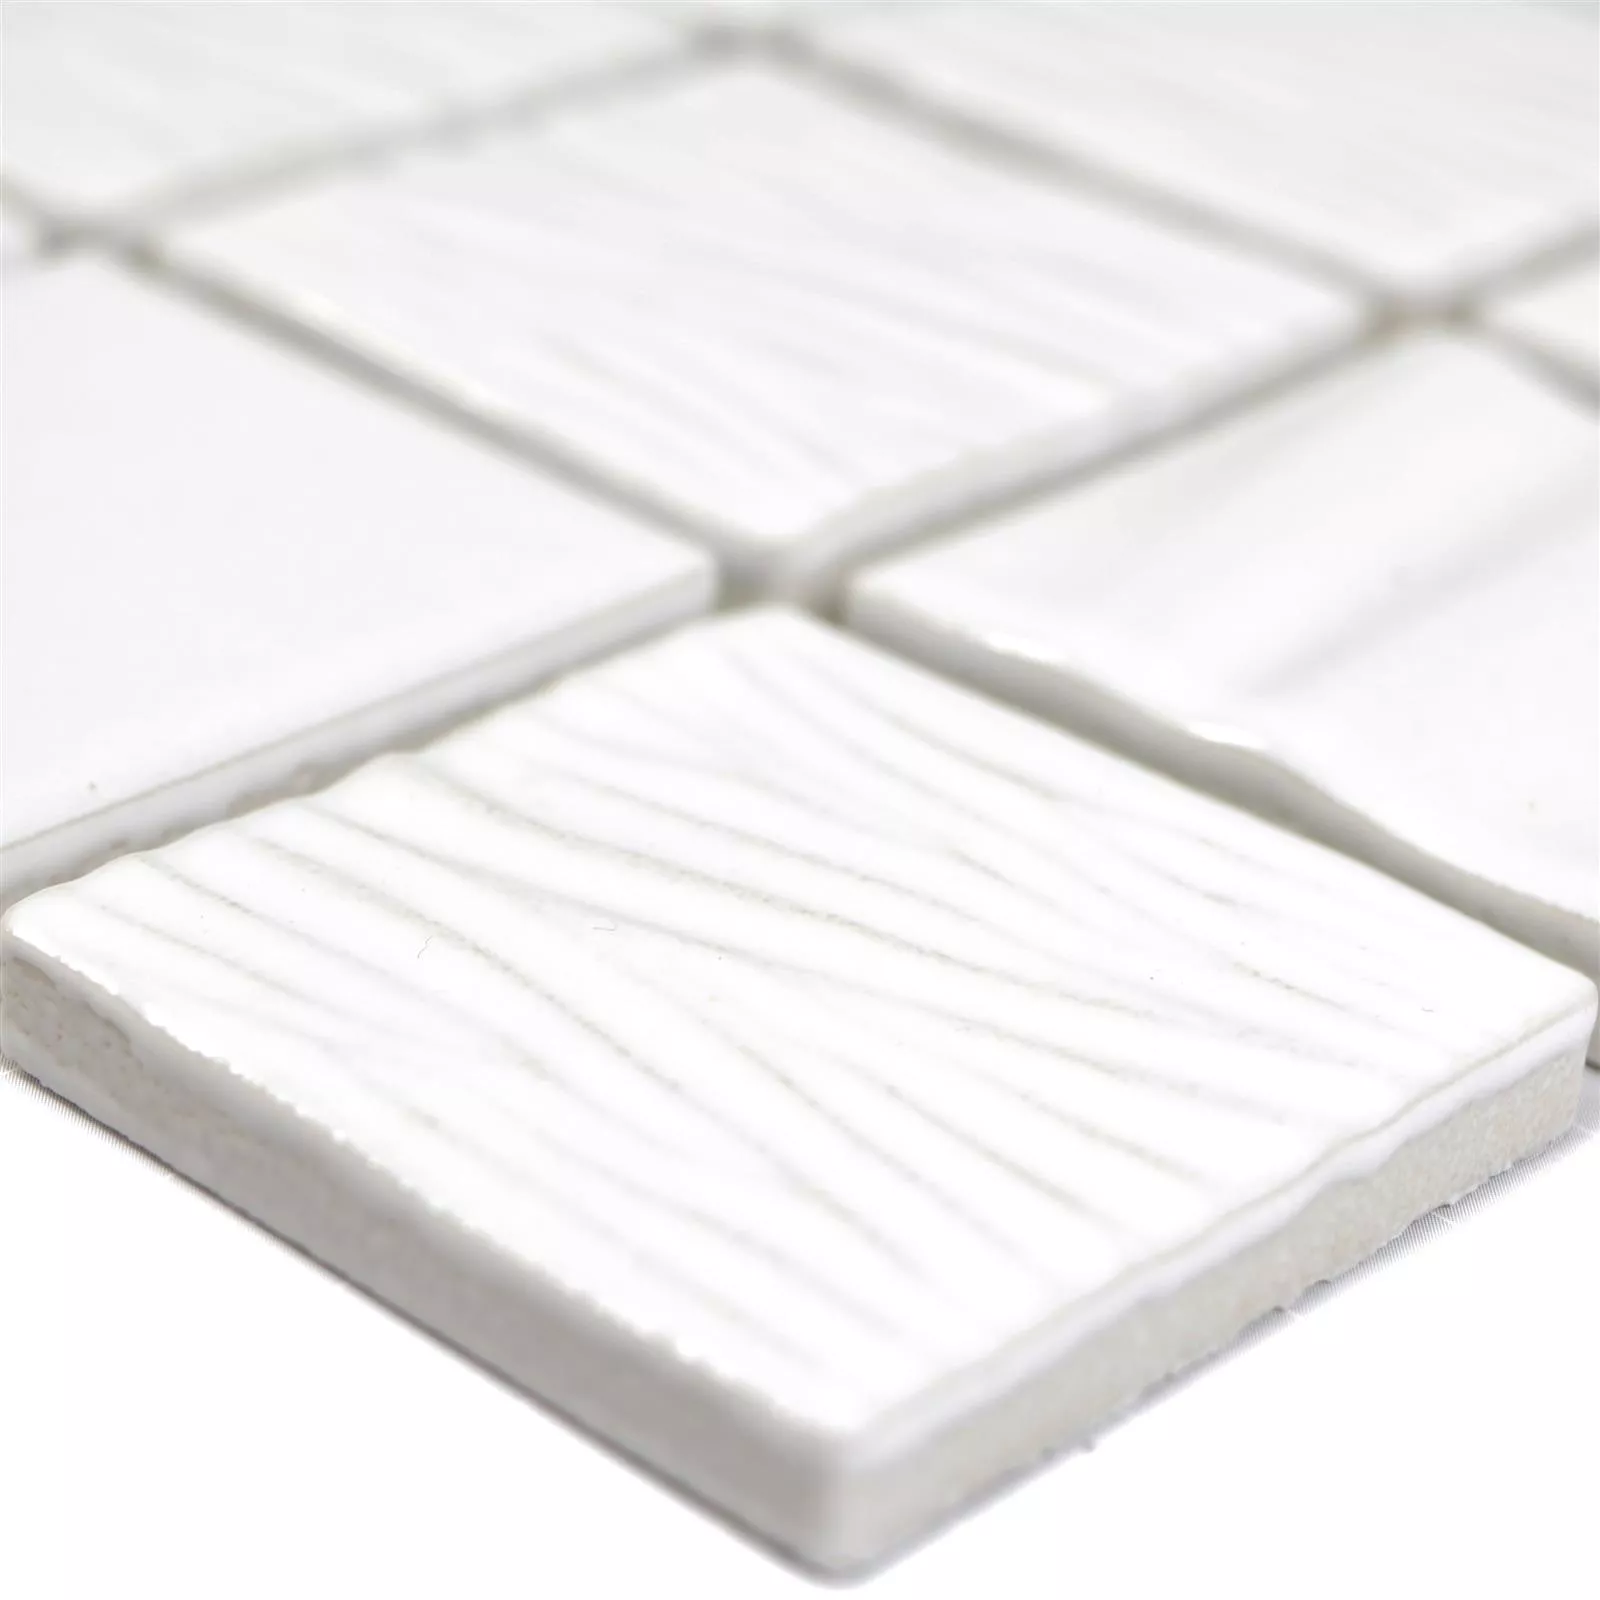 Próbka Mozaika Ceramiczna Płytki Rokoko 3D Elegance Biały